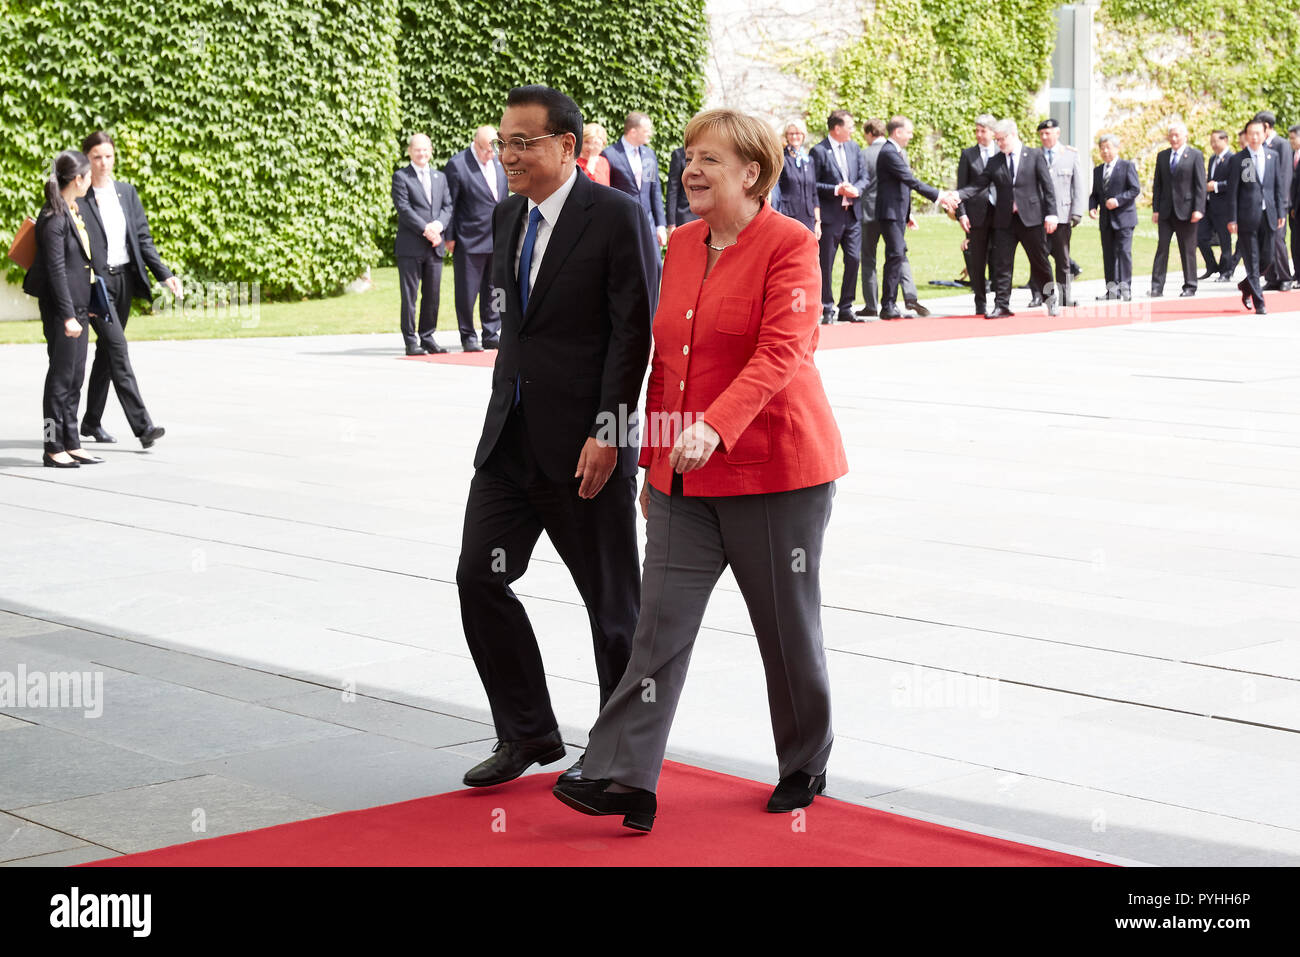 Berlin, Allemagne - La Chancelière allemande Angela Merkel et le Premier ministre chinois Li Keqiang quitter la Cour du Chancelier d'Honneur après avoir reçu les honneurs militaires. Banque D'Images